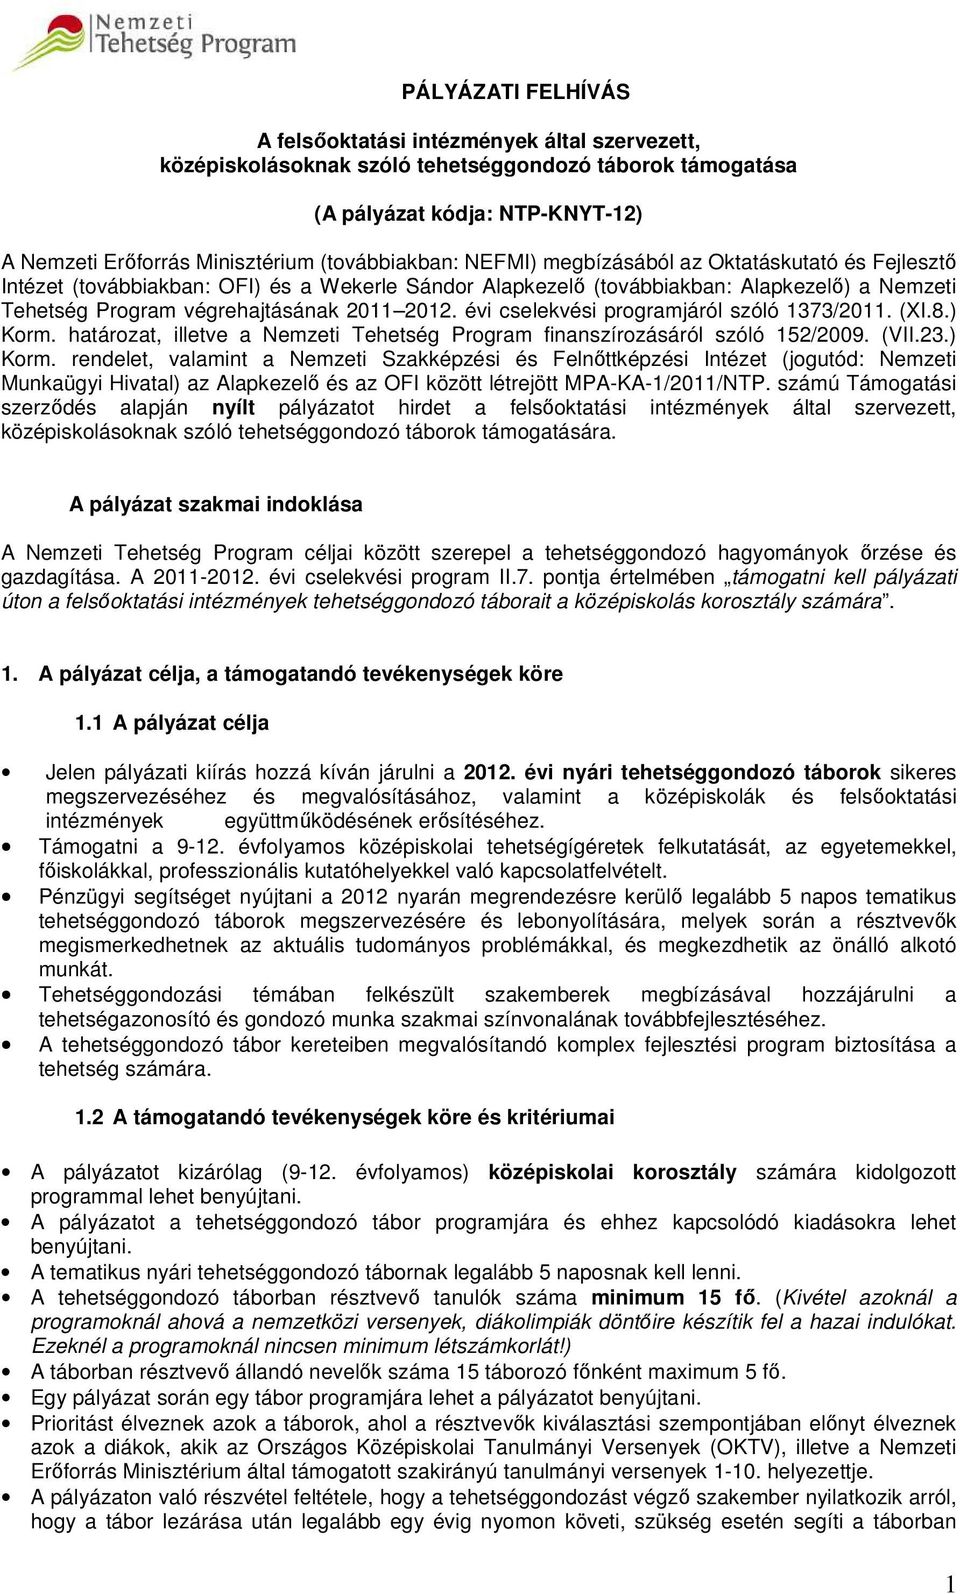 2012. évi cselekvési programjáról szóló 1373/2011. (XI.8.) Korm.